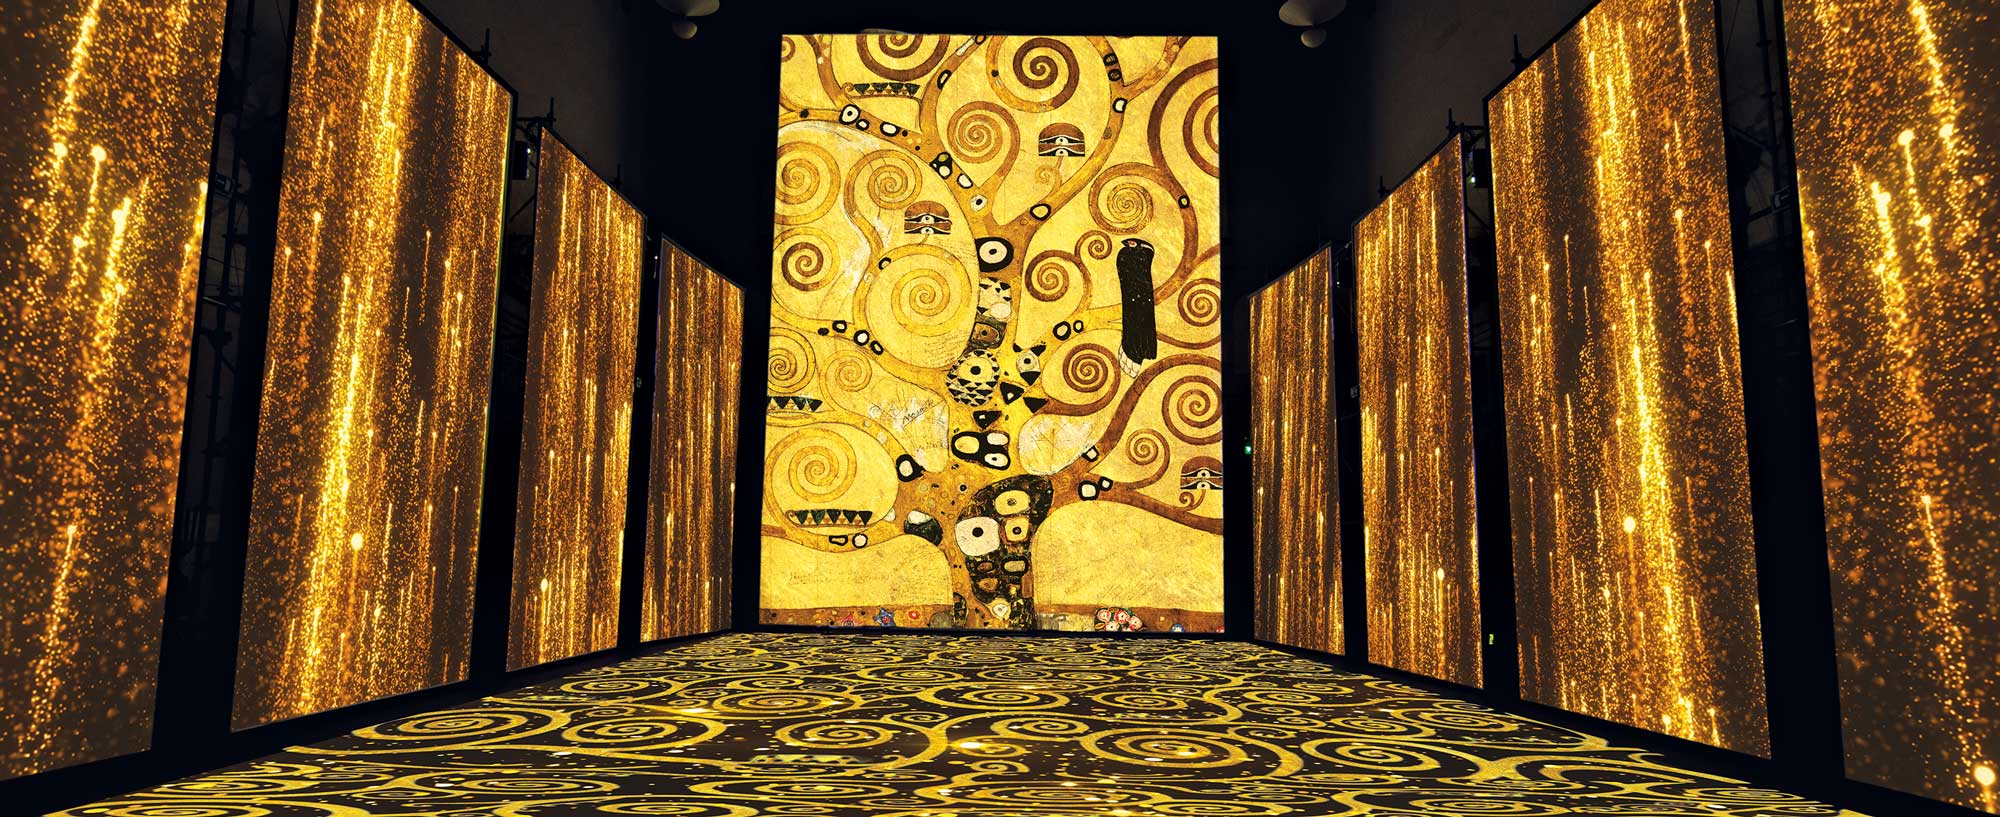 Le proiezioni interagiscono con l’ambiente che le ospita, ridisegnandolo e valorizzandolo. I motivi tratti dai dipinti più celebri del grande artista rivestono lo spazio e avvolgono lo spettatore. Particolare e texture ispirate a G. Klimt, L’albero della vita, dal Fregio per Palazzo Stoclet a Bruxelles.